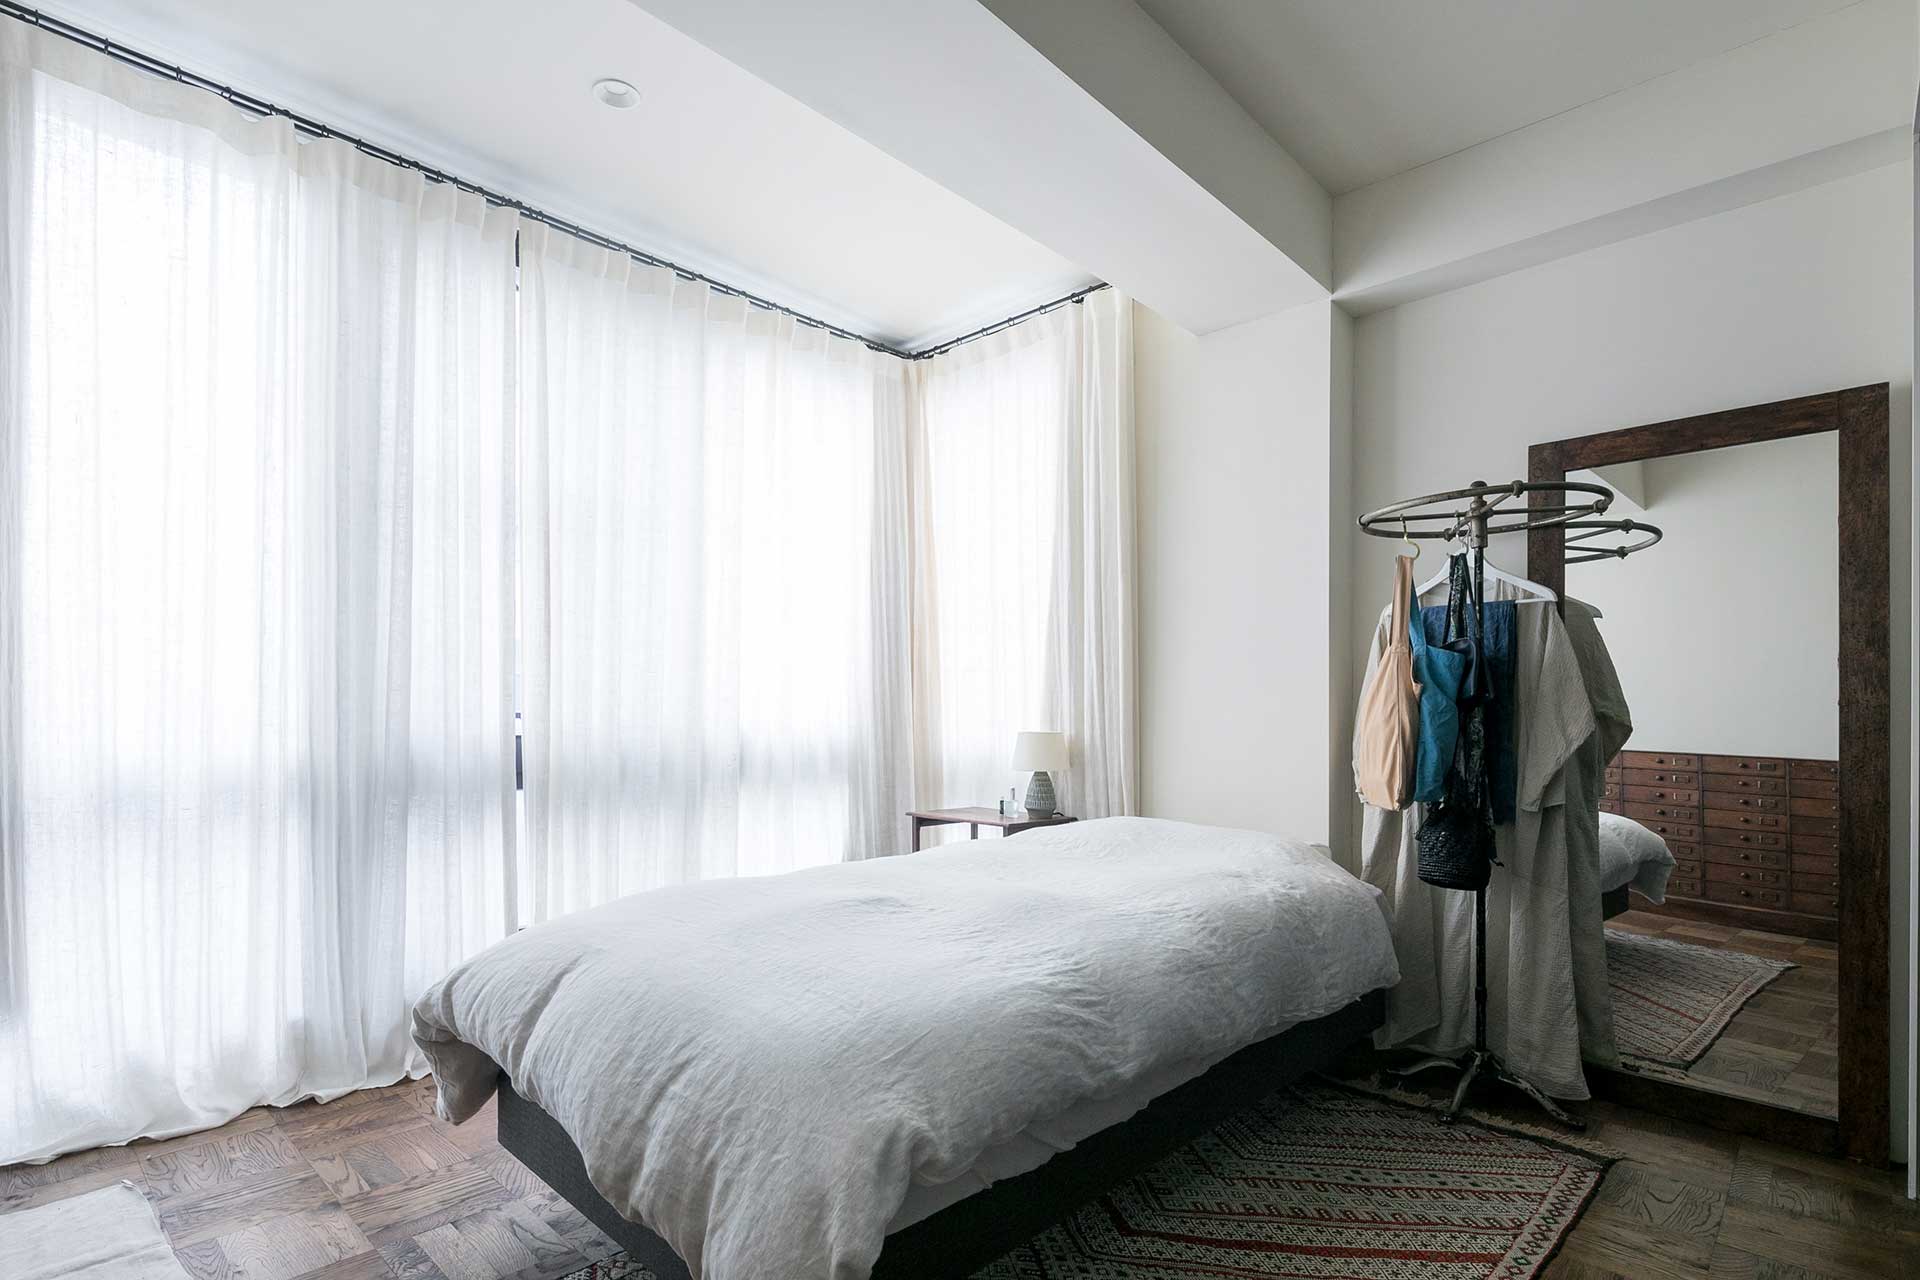 天井からのたっぷりとしたドレープのリネンのカーテン越しの光が心地よい。寝室なので遮光カーテンと併用している。